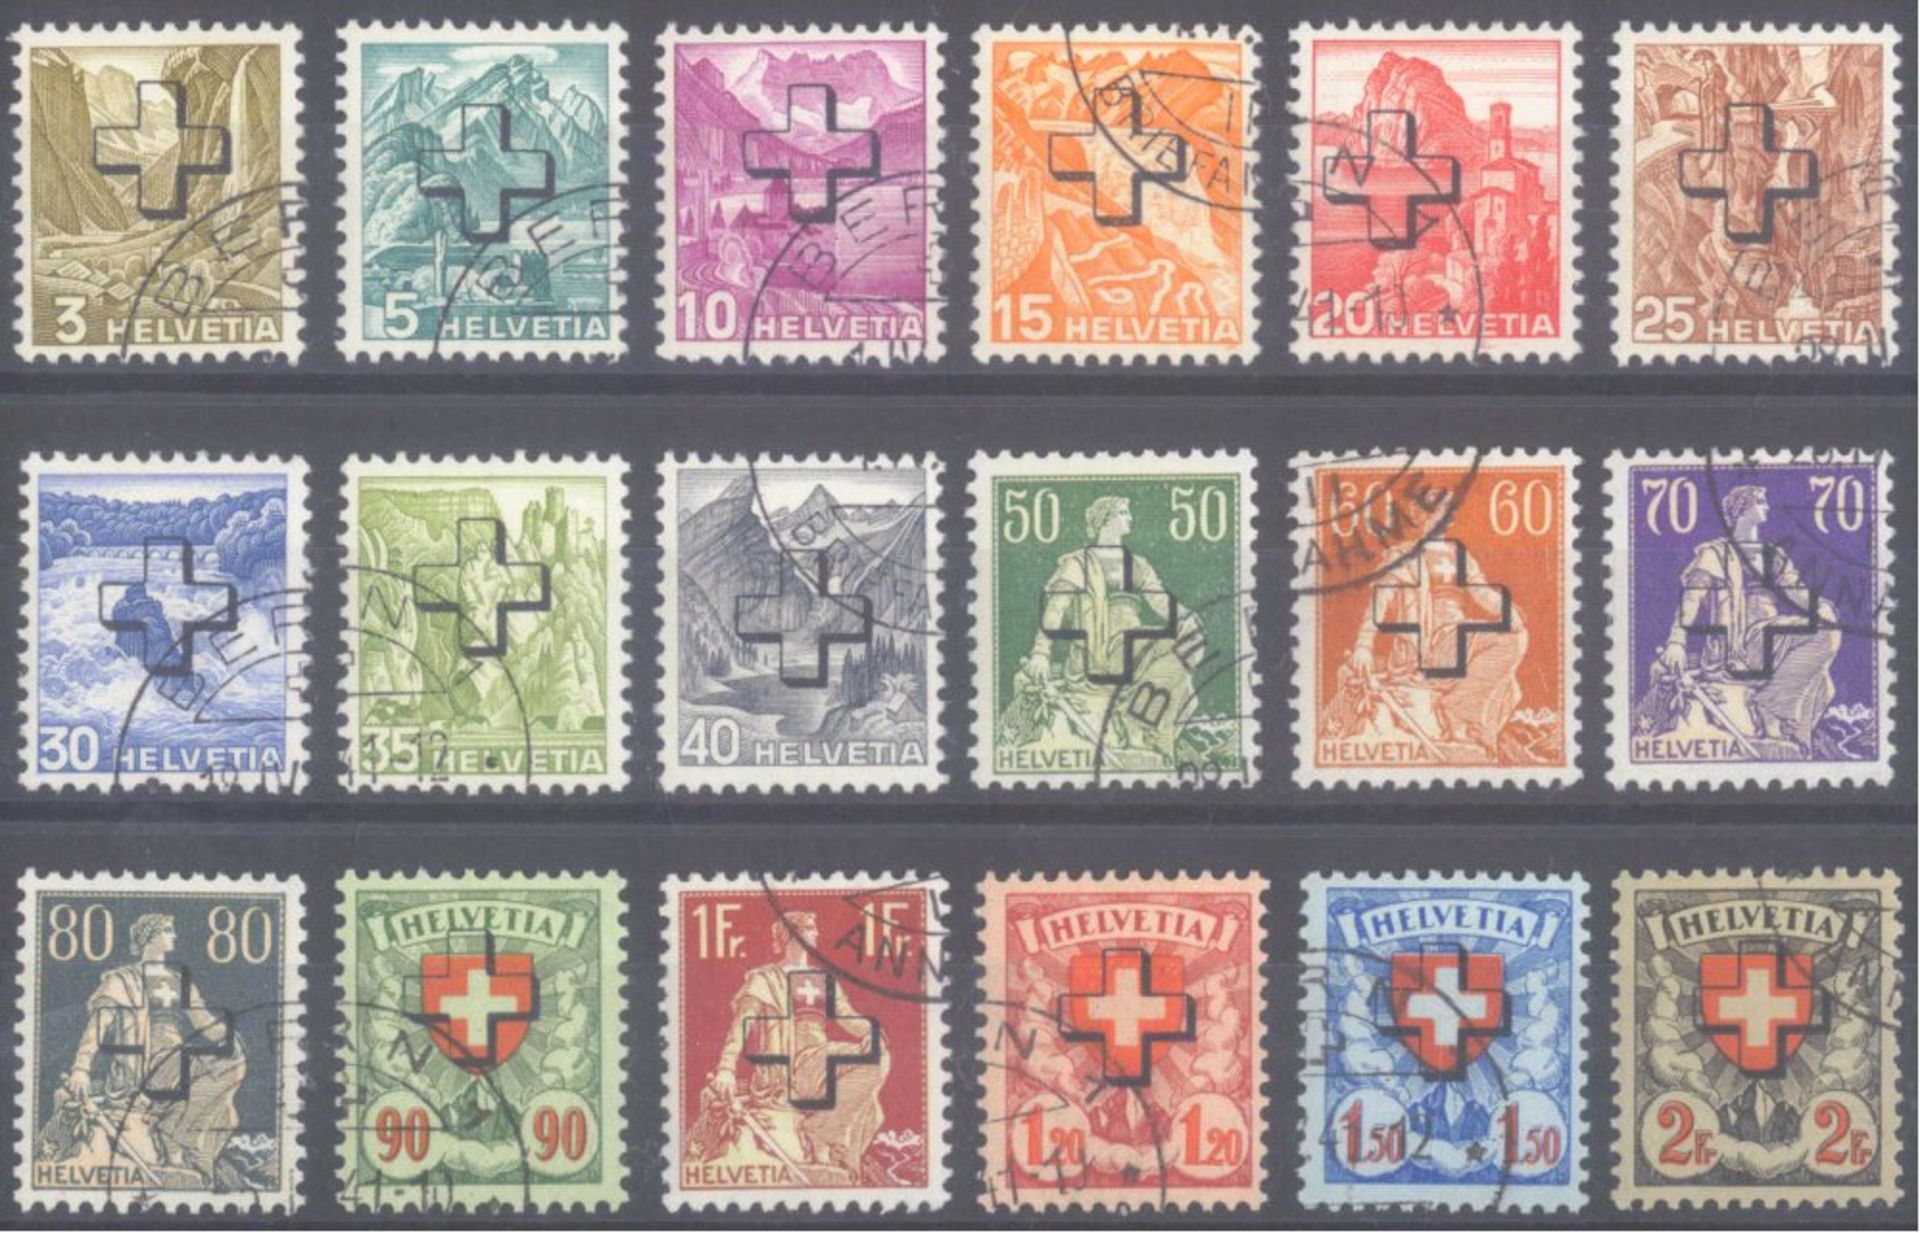 1938 Schweiz, Dienstmarken Bundesbehörden, "Kreuz"-AufdruckMichelnummern 28-45 je gestempelt